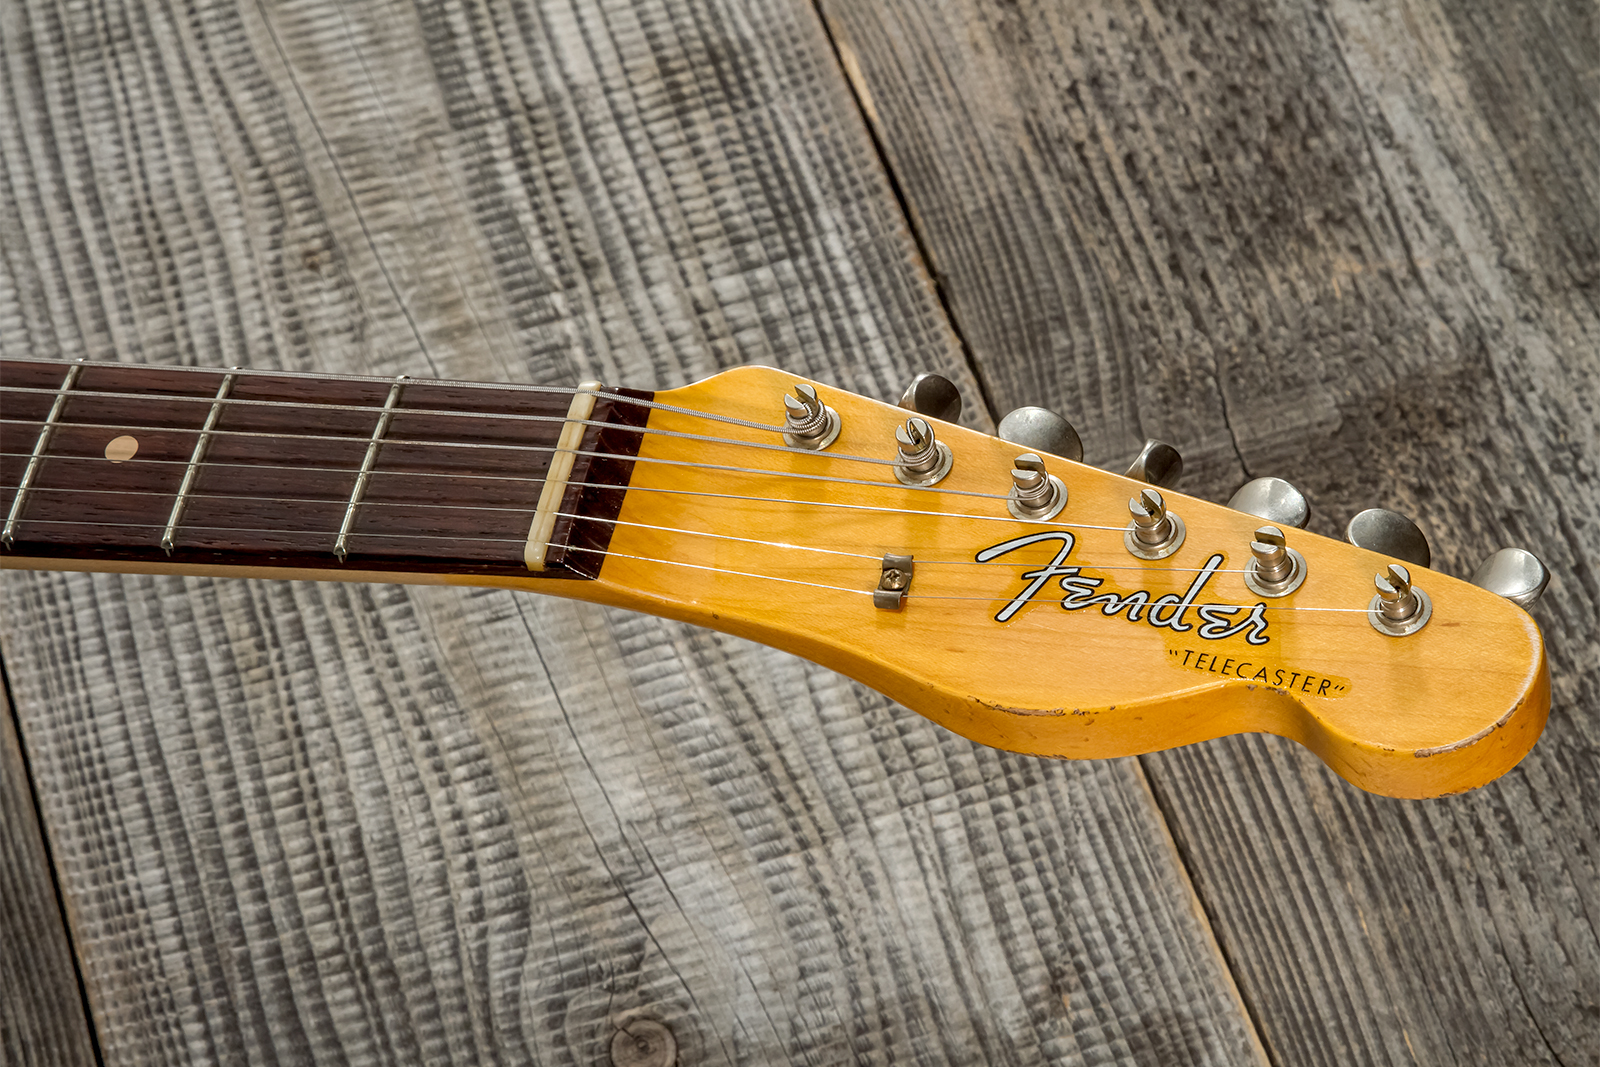 Fender Custom Shop Tele 1960 2s Ht Rw #cz569492 - Relic Natural Blonde - Guitare Électrique Forme Tel - Variation 8